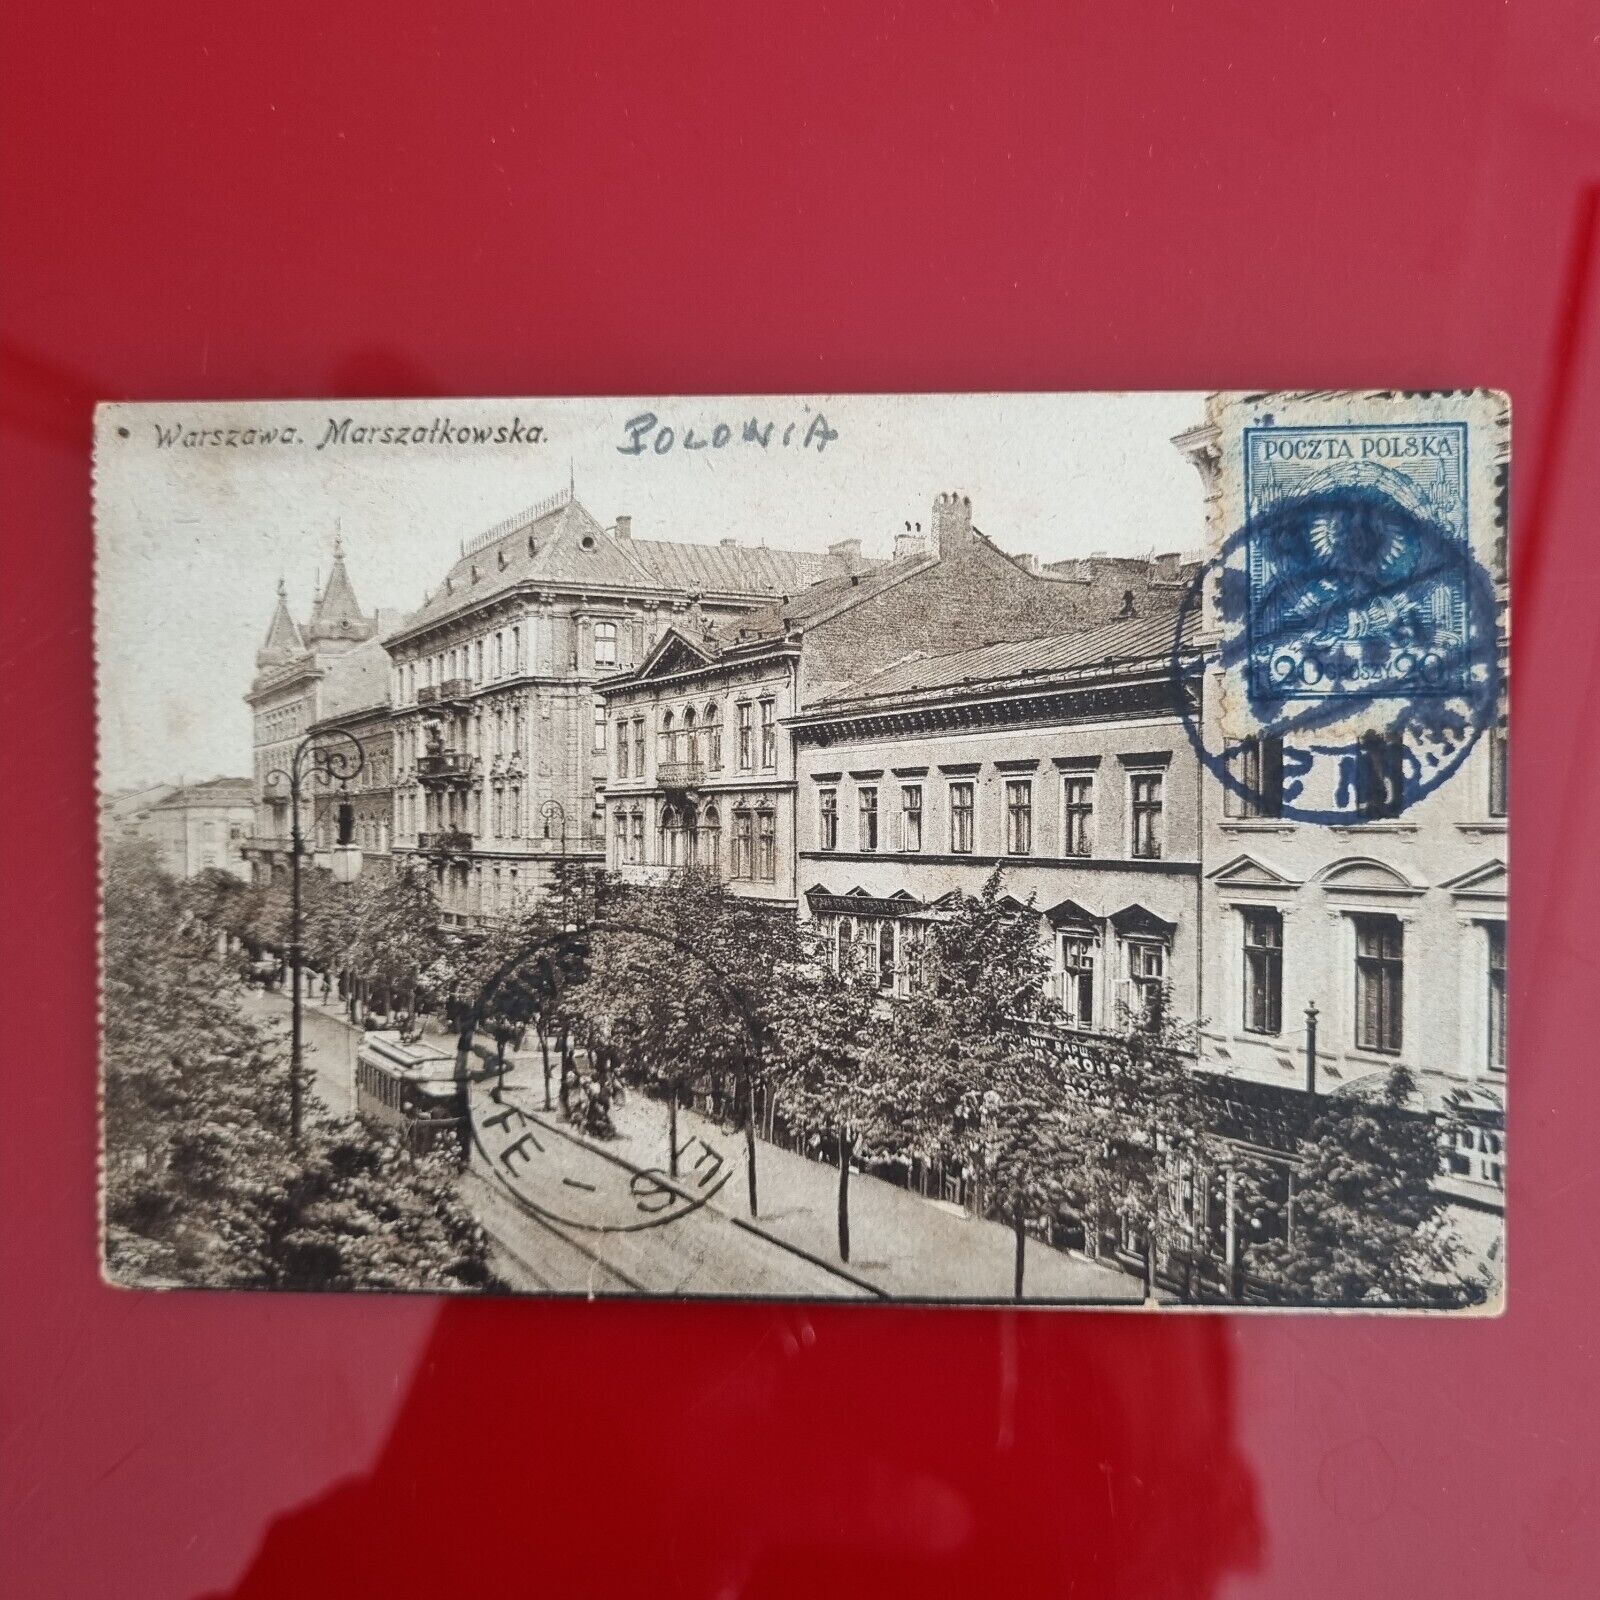 CPA 1925 - ESPERANTO - POLSKA - WARSZAWA, MARSZATKOWSKA